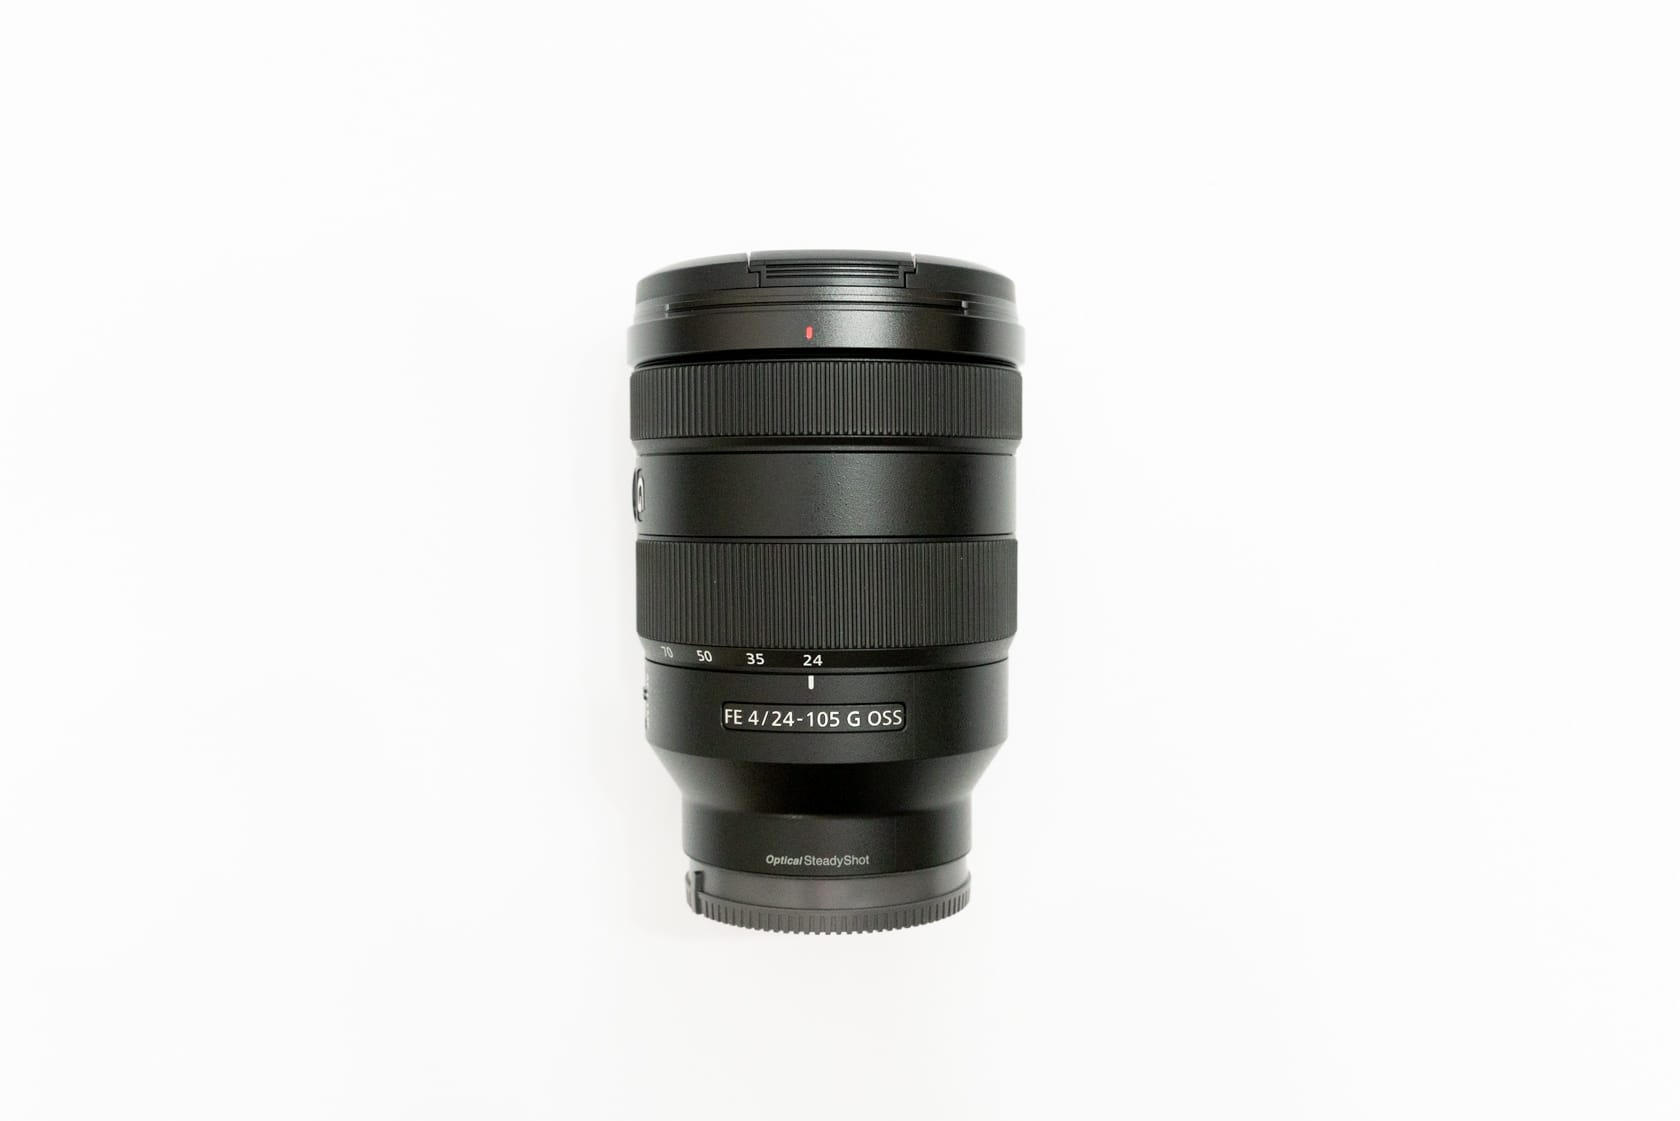 ソニーフルサイズ用レンズ『SEL24105G 24-105mm F4 G』レビュー。Canon キャノン カメラレンズ EF 85mm f/1.2L II USM Autofocus Lens並行輸入品。フル 